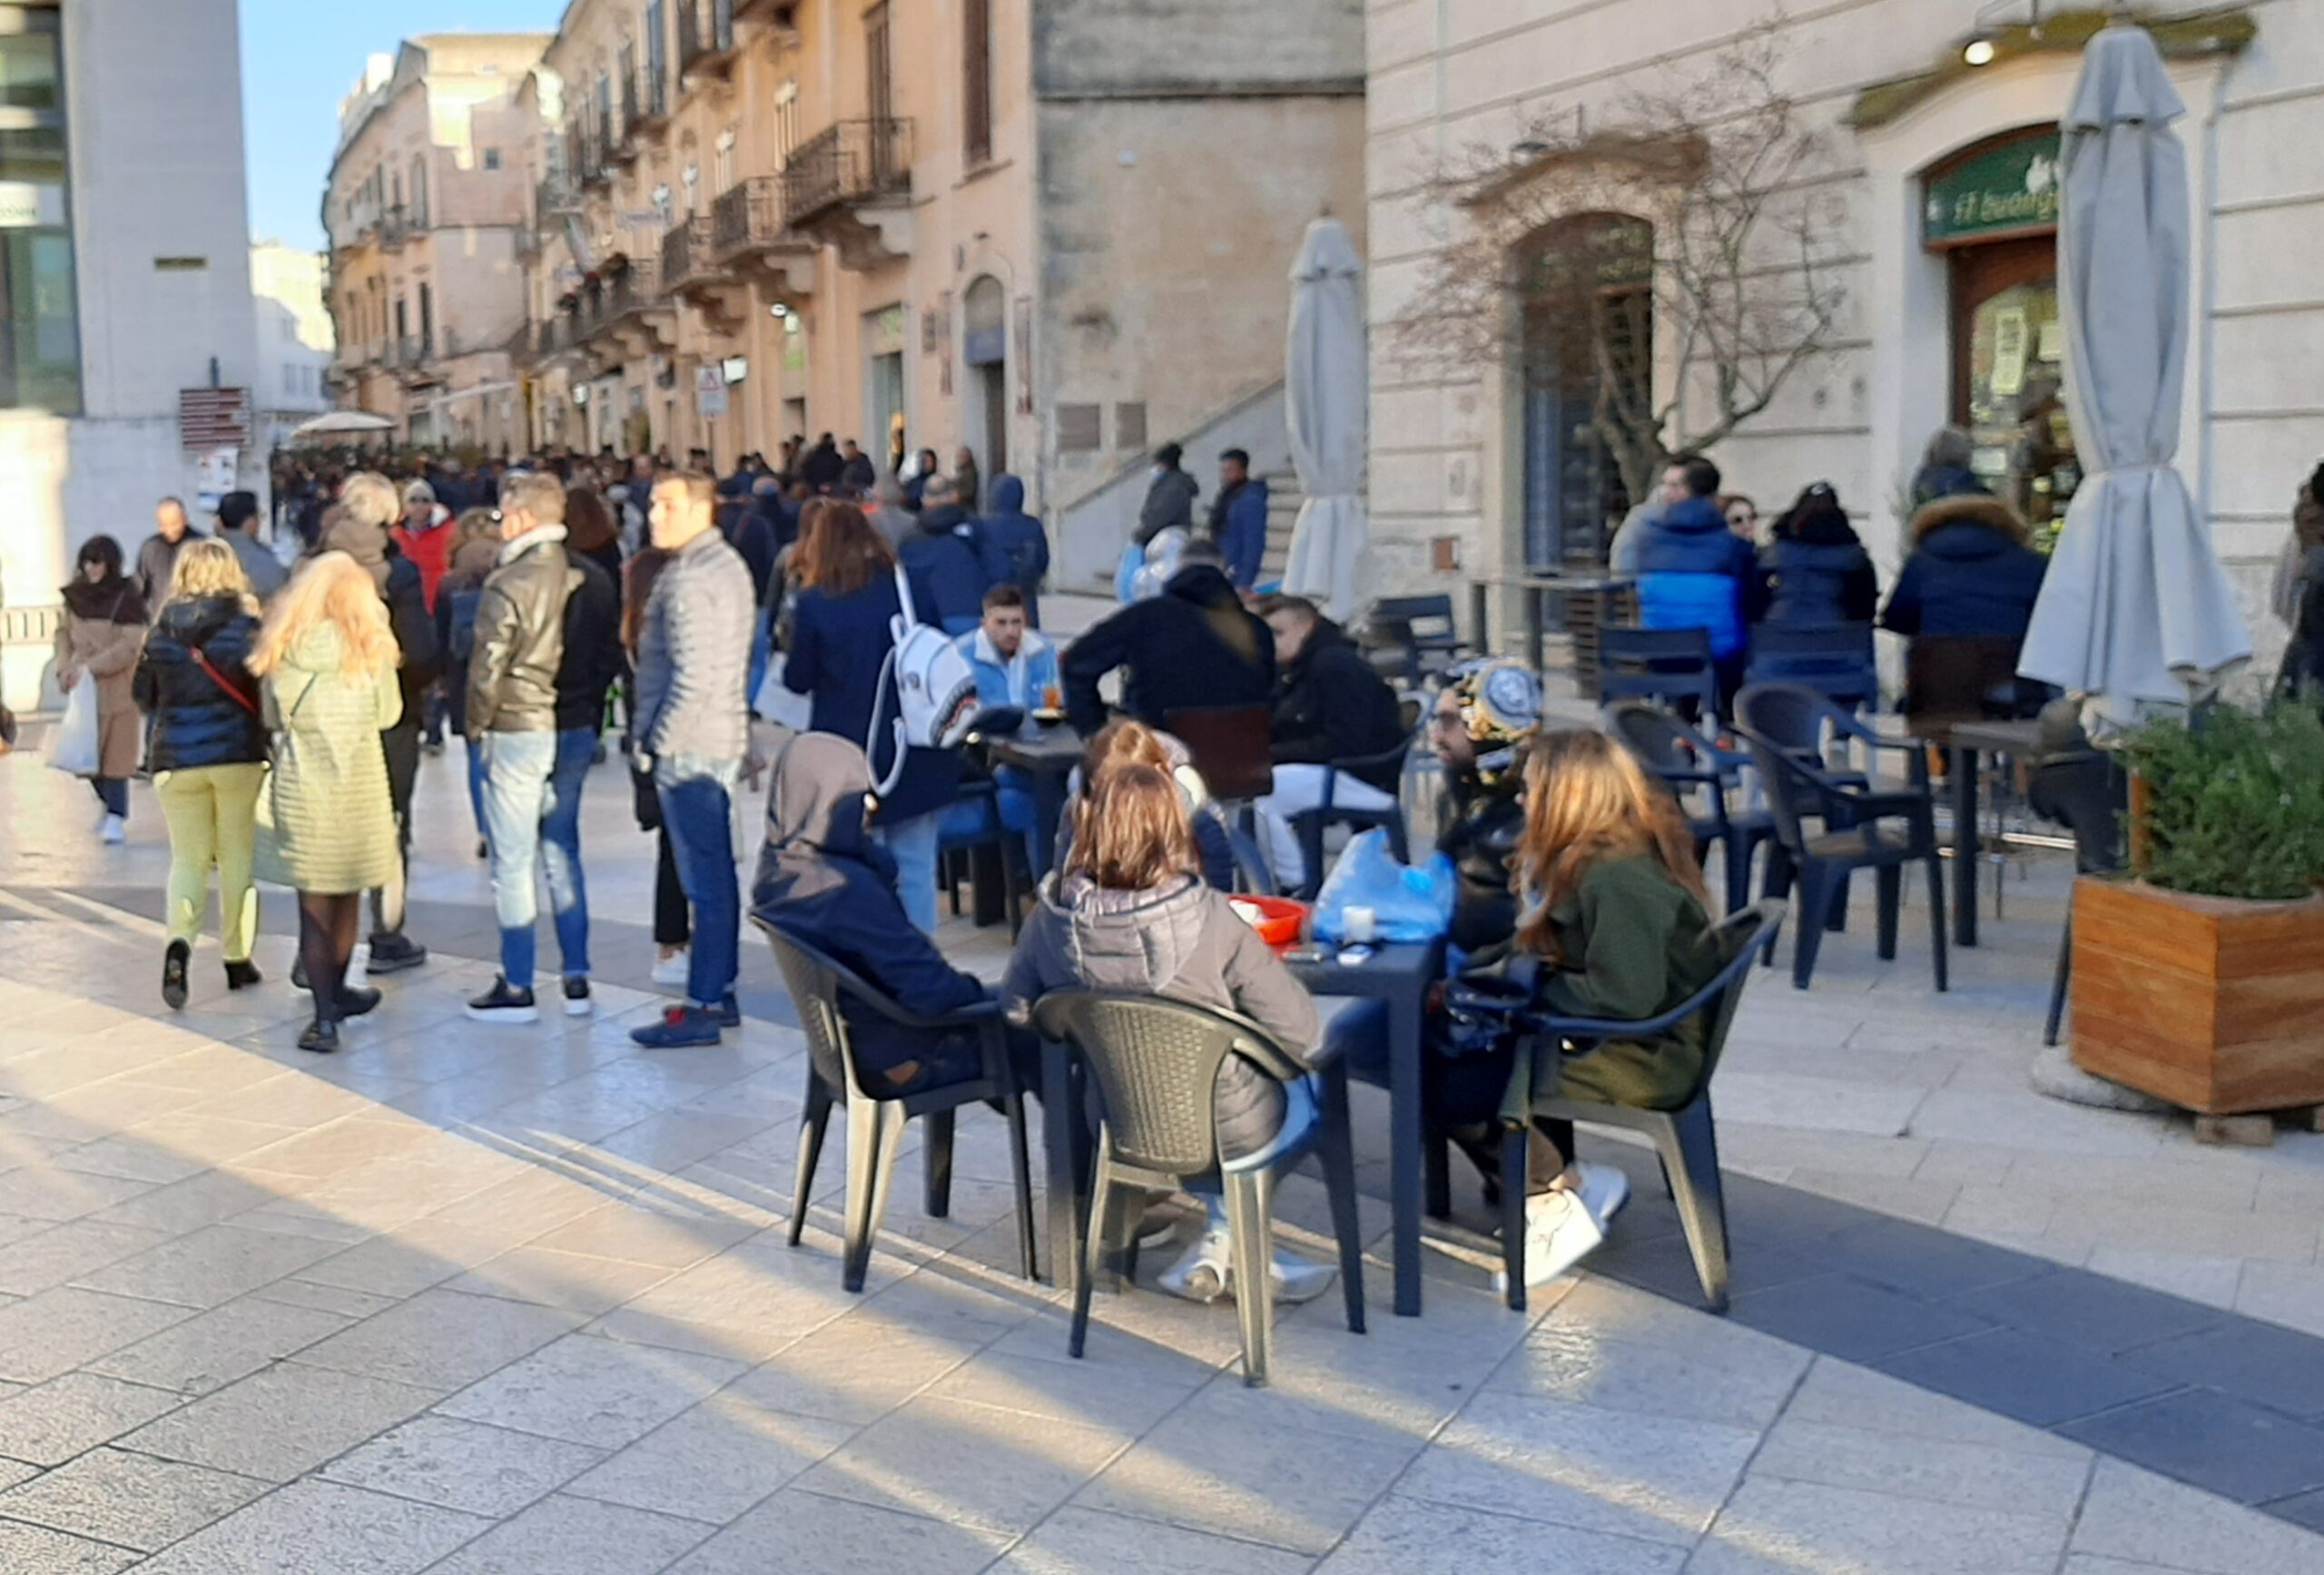 Continua l’onda positiva del turismo a Matera, la città dei Sassi al primo posto per gradimento e buone recensioni secondo “Il Messaggero”